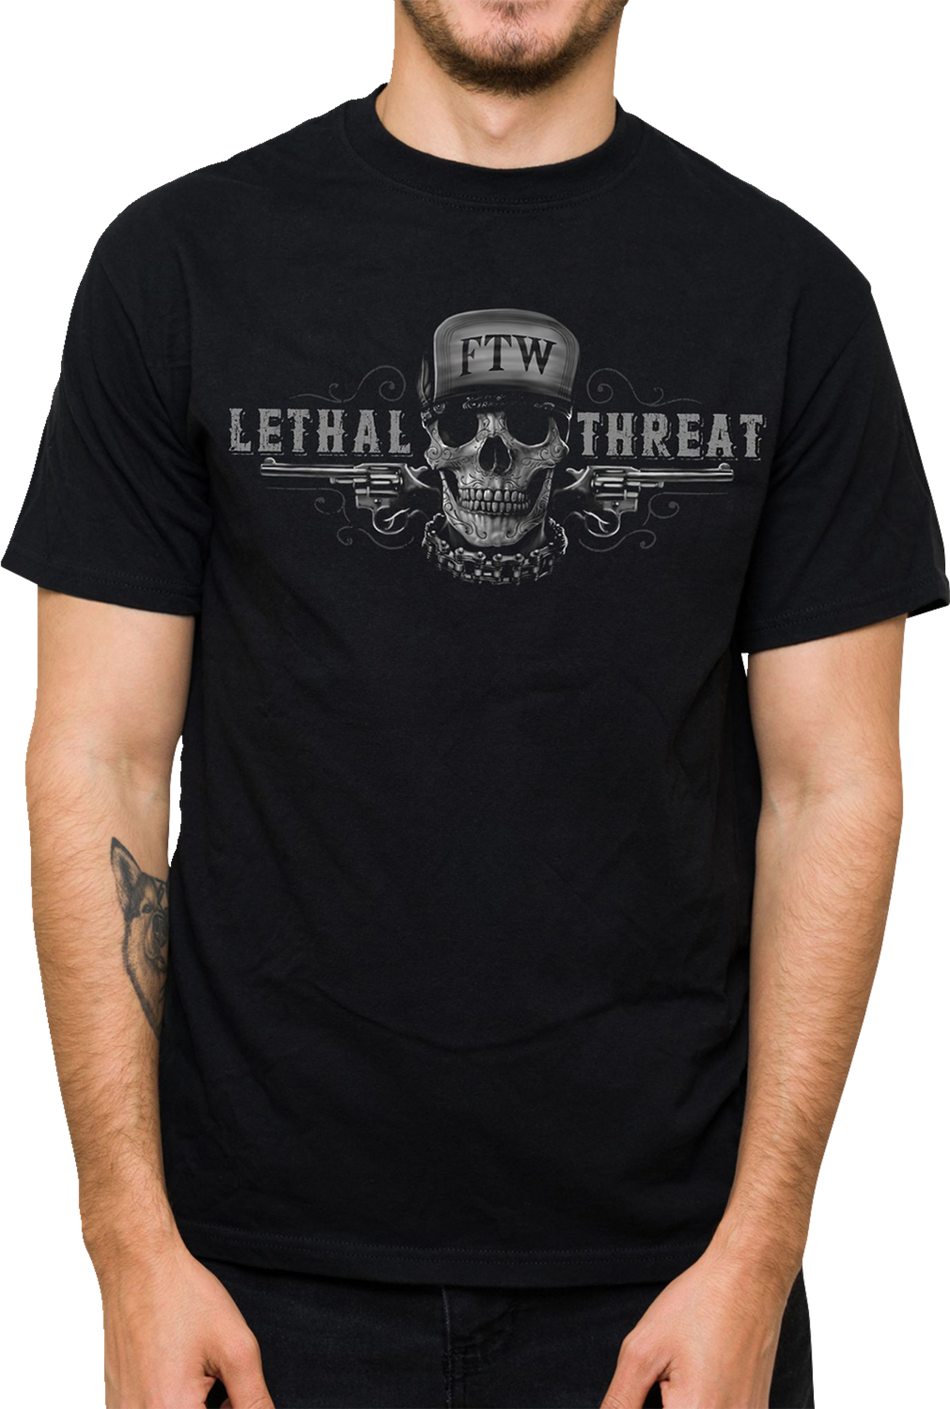 LETHAL THREAT Friend or Foe T-Shirt - Black - 3XL LT20904XXXL